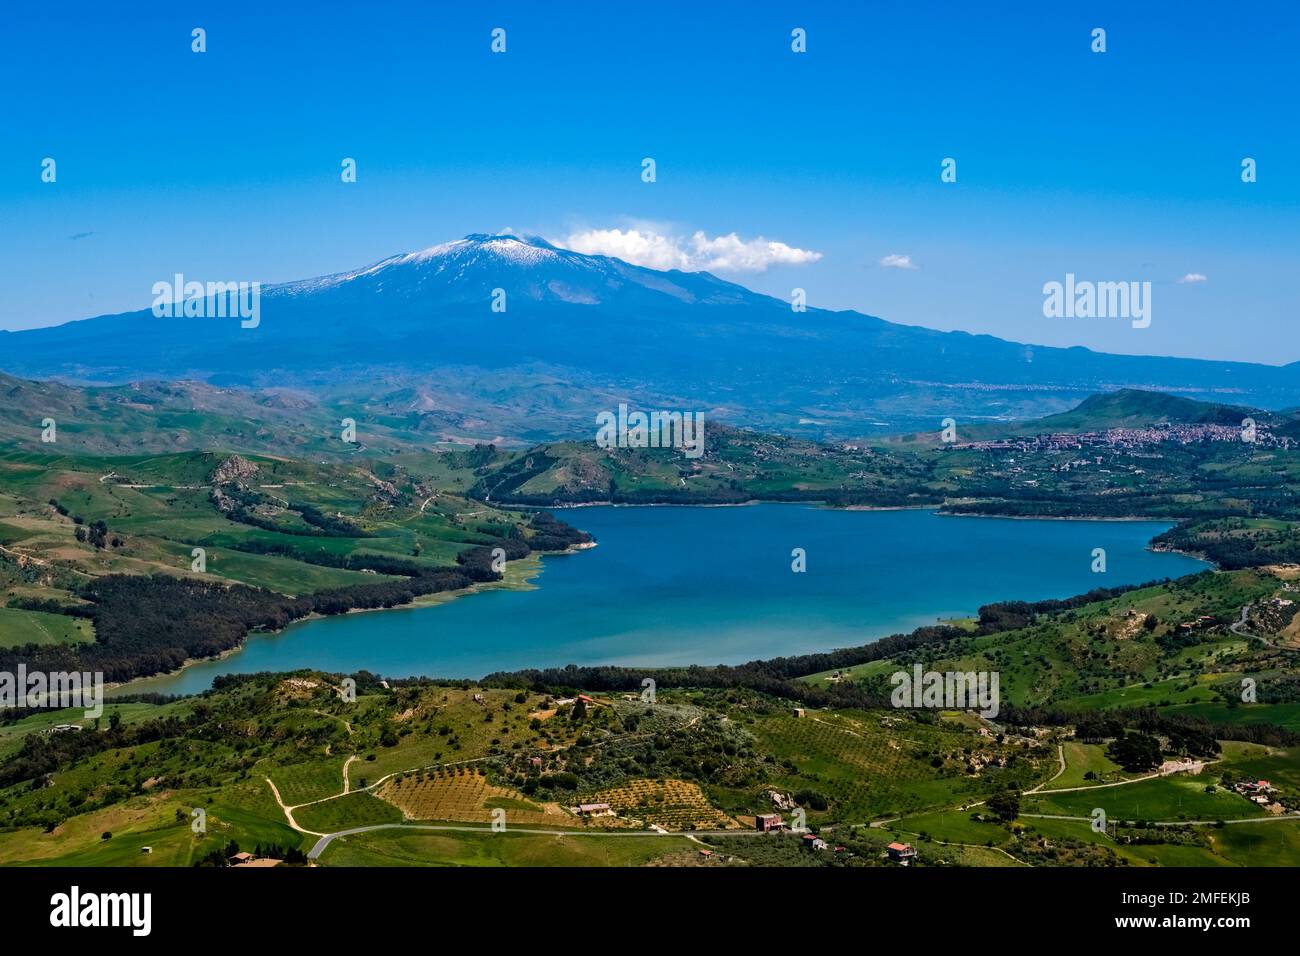 Luftaufnahme auf die landwirtschaftliche Landschaft mit grünen Hügeln, Bäumen und Feldern, Pozzillo See, Lago di Pozzillo und dem Vulkan Ätna, der Wolken von Smo emittiert Stockfoto